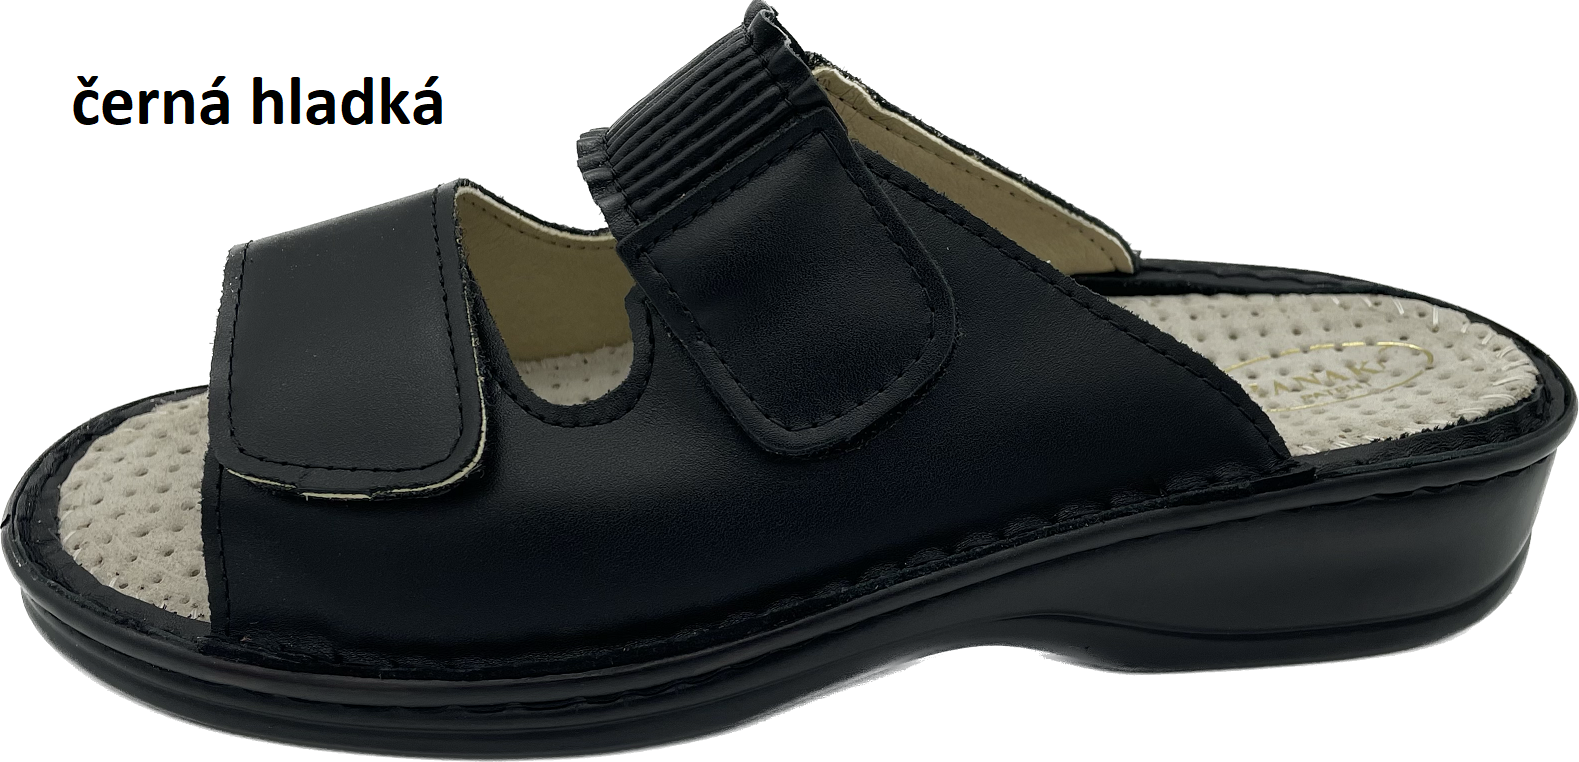 Boty Hanák vzor 304 - černá podešev Barva usně: černá hladká, Velikosti obuvi: 38